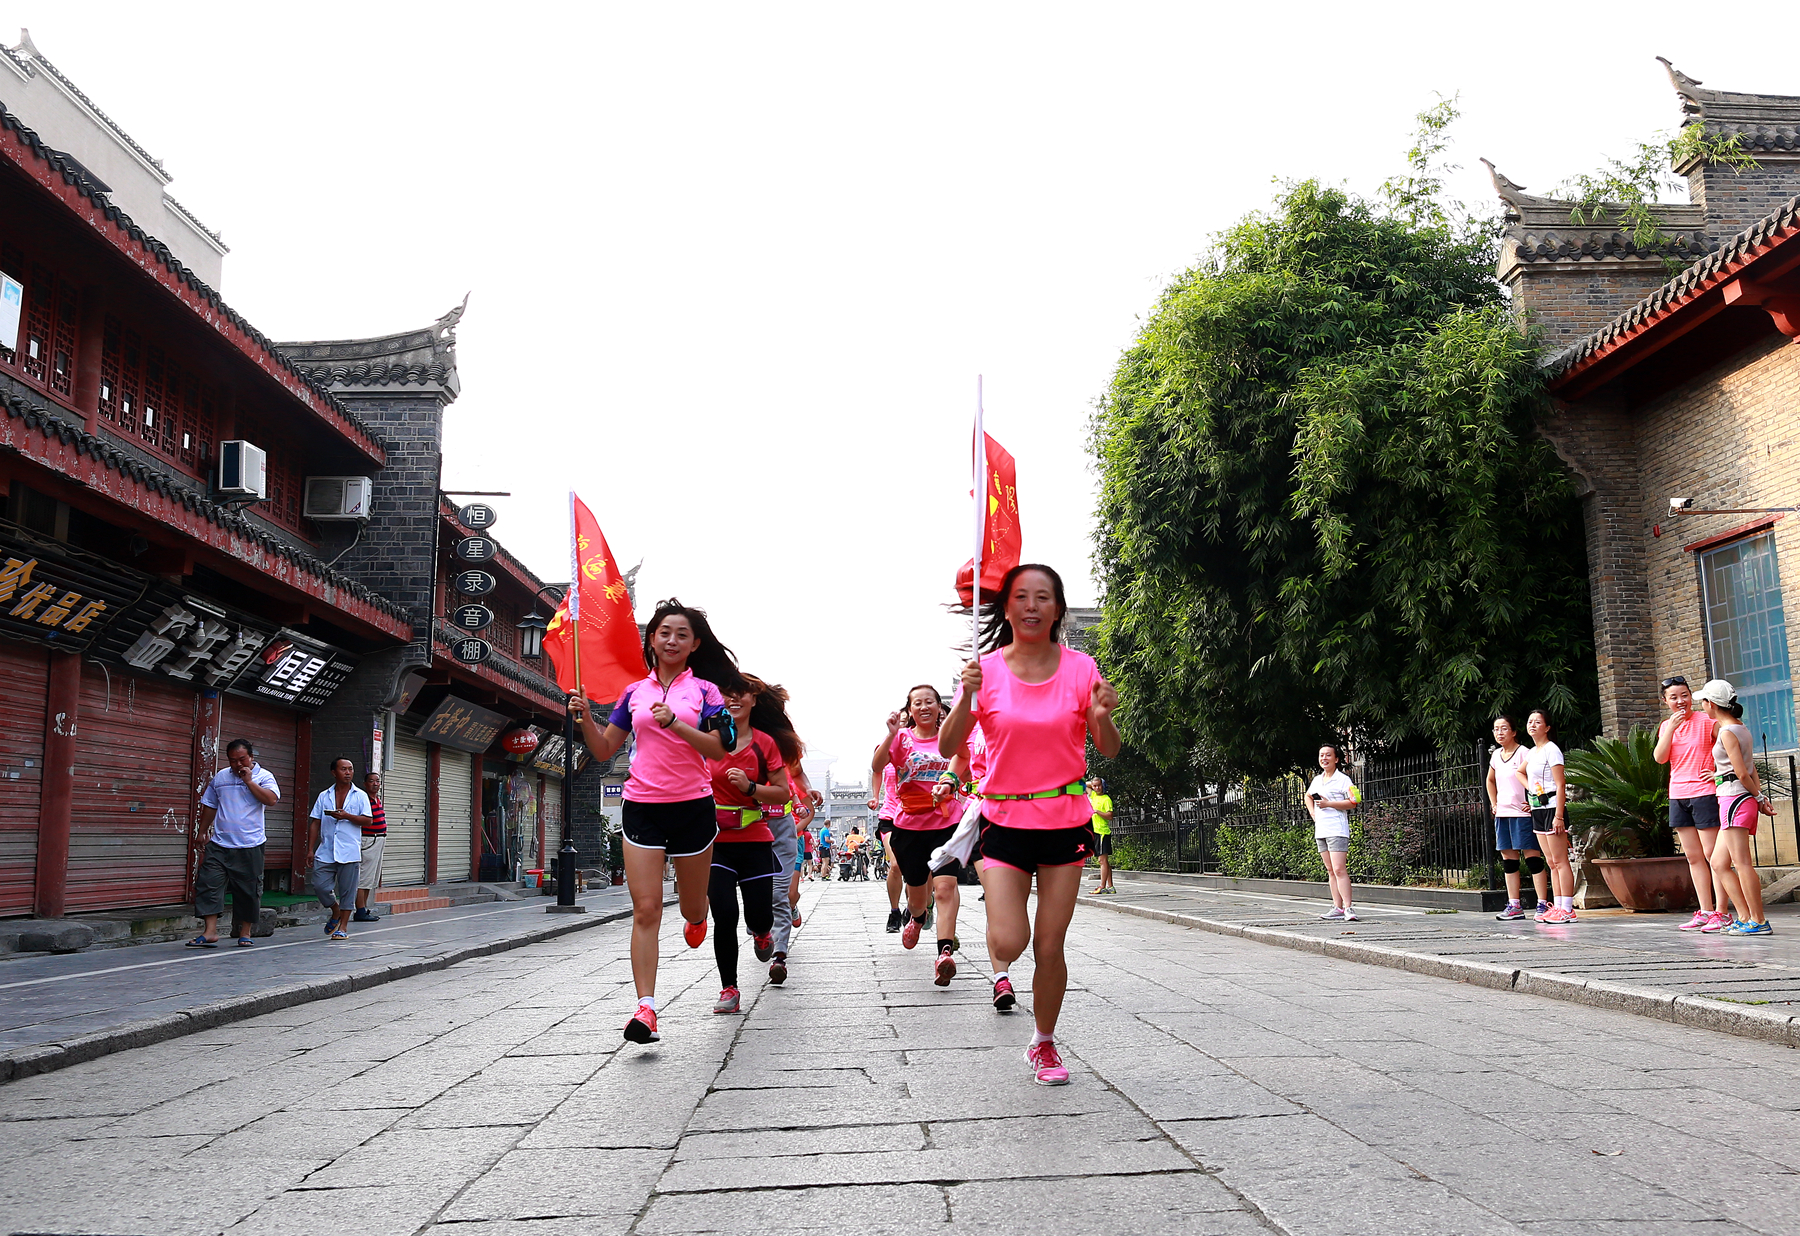 150名跑者历时60天,用脚步绘制的襄阳最新街